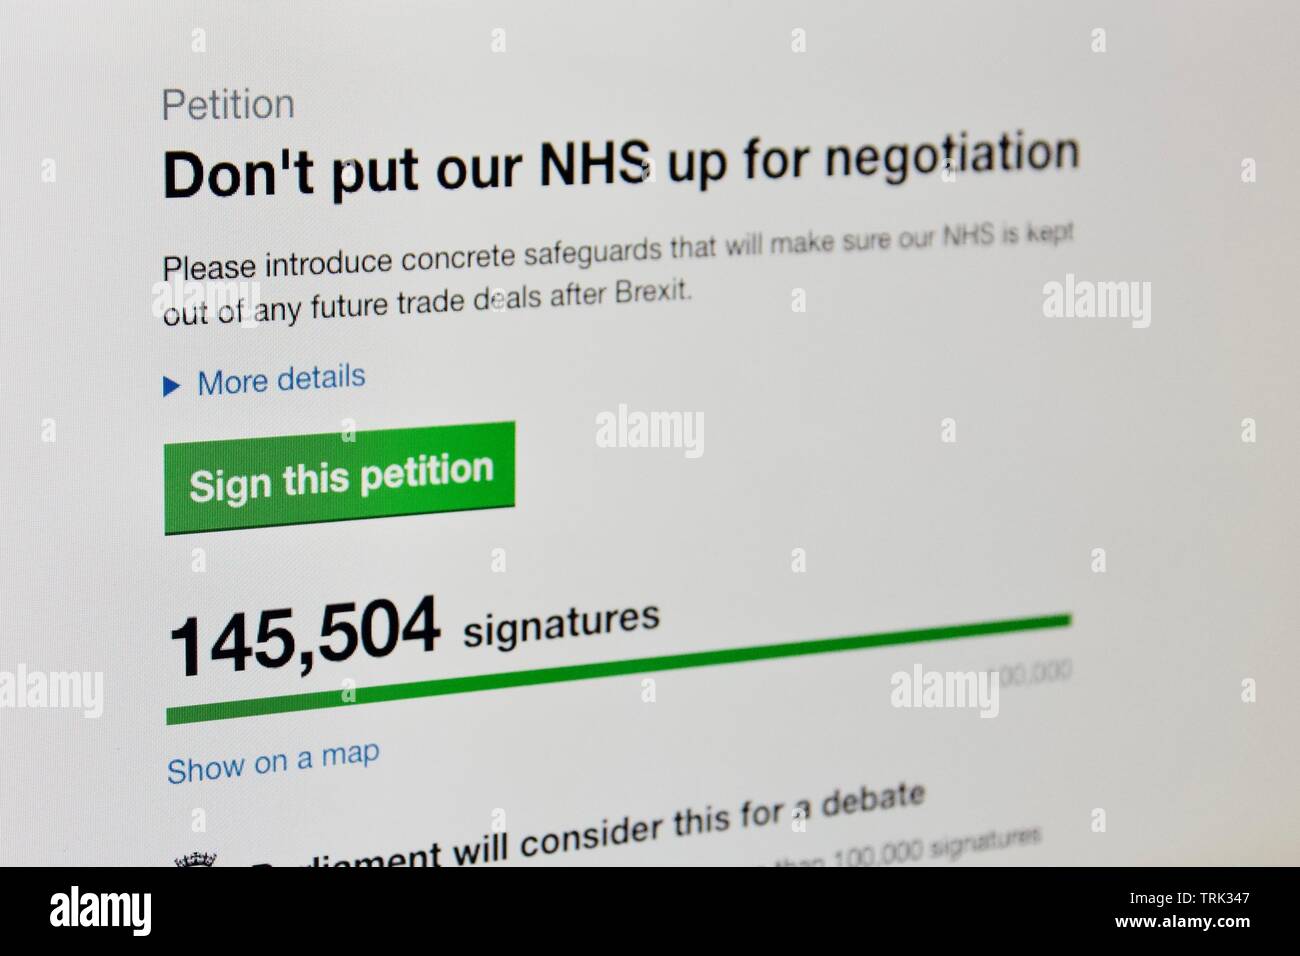 Regno Unito petizione online per non mettere NHS fino per la negoziazione dopo Brexit Foto Stock